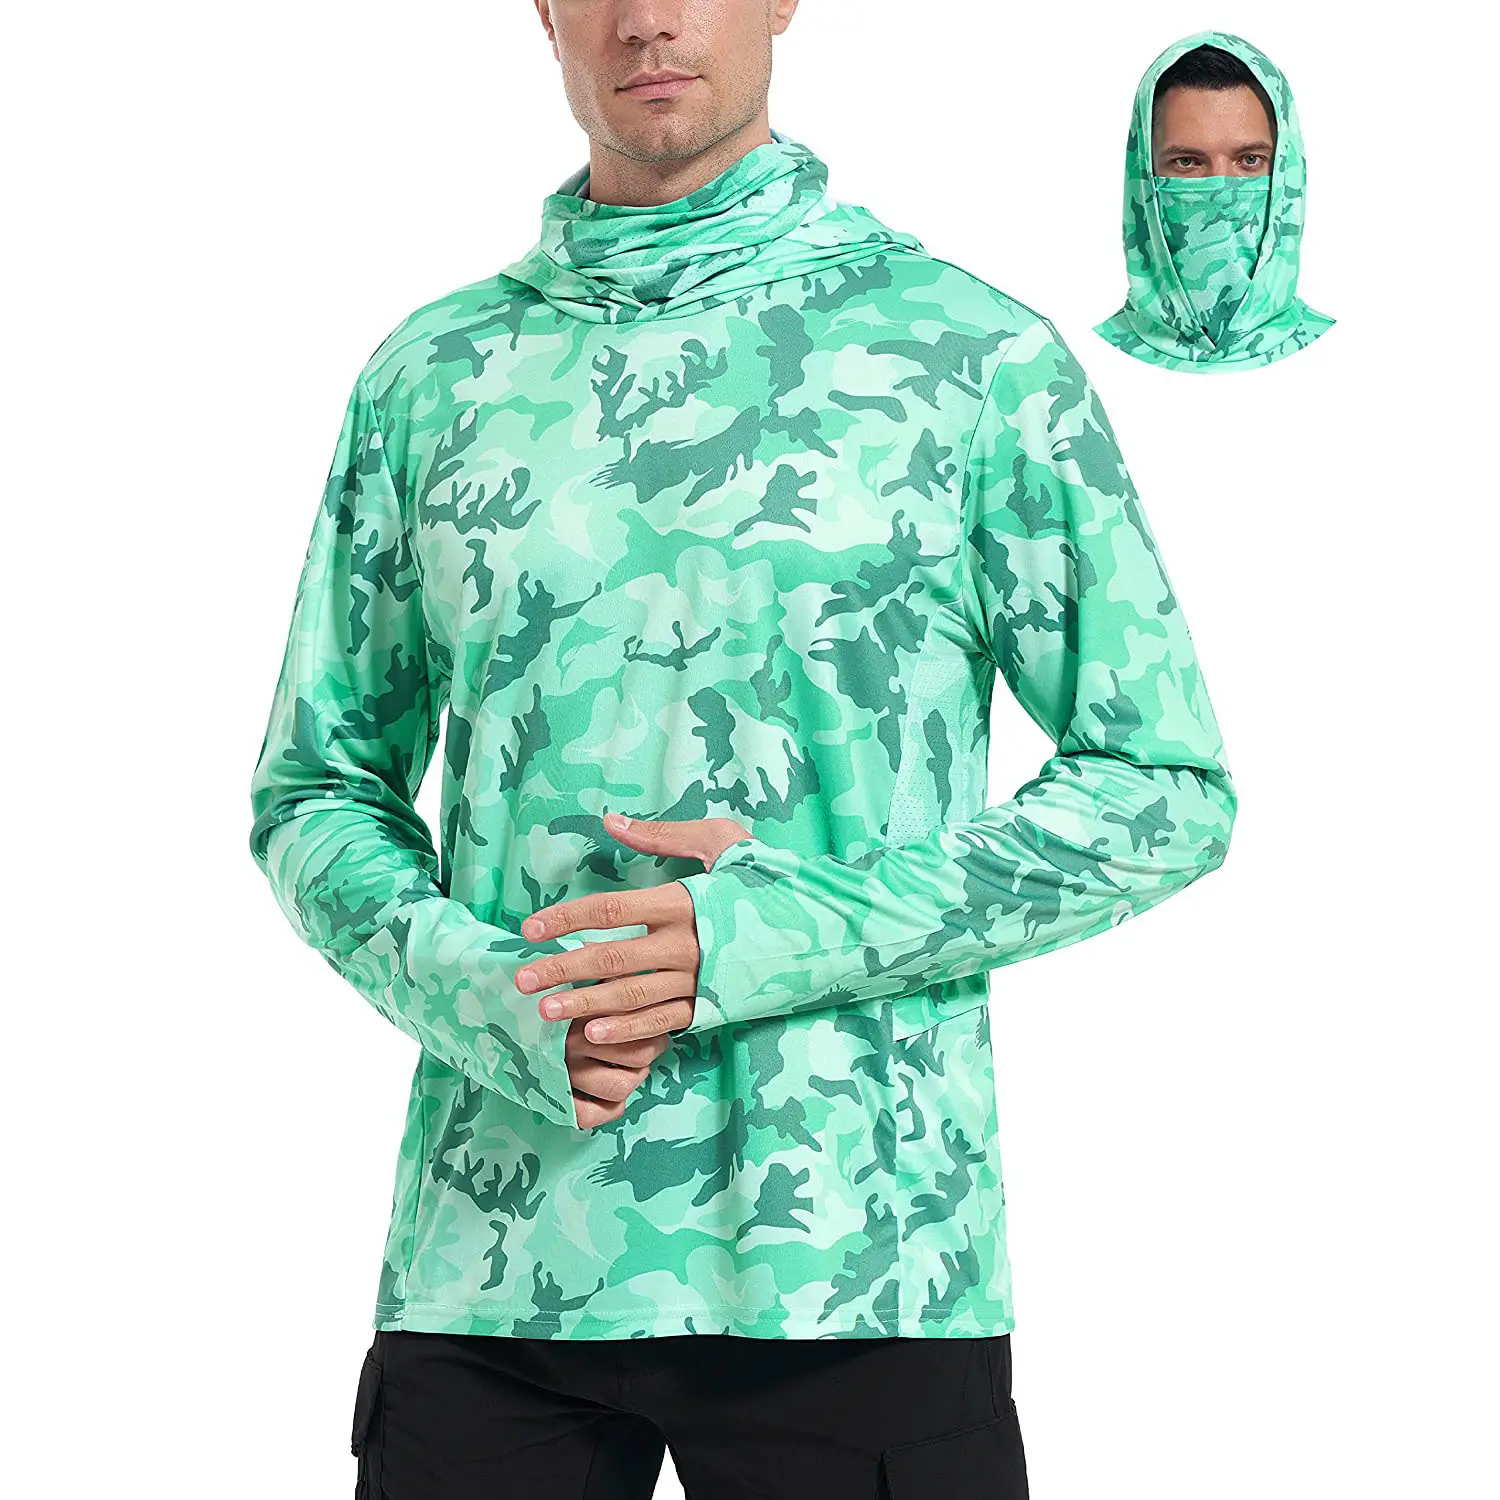 Projeto fabricado Hoodie pesca camisa de manga comprida com capuz Sunblock camisa exterior Quick-Dry Hoody para homens